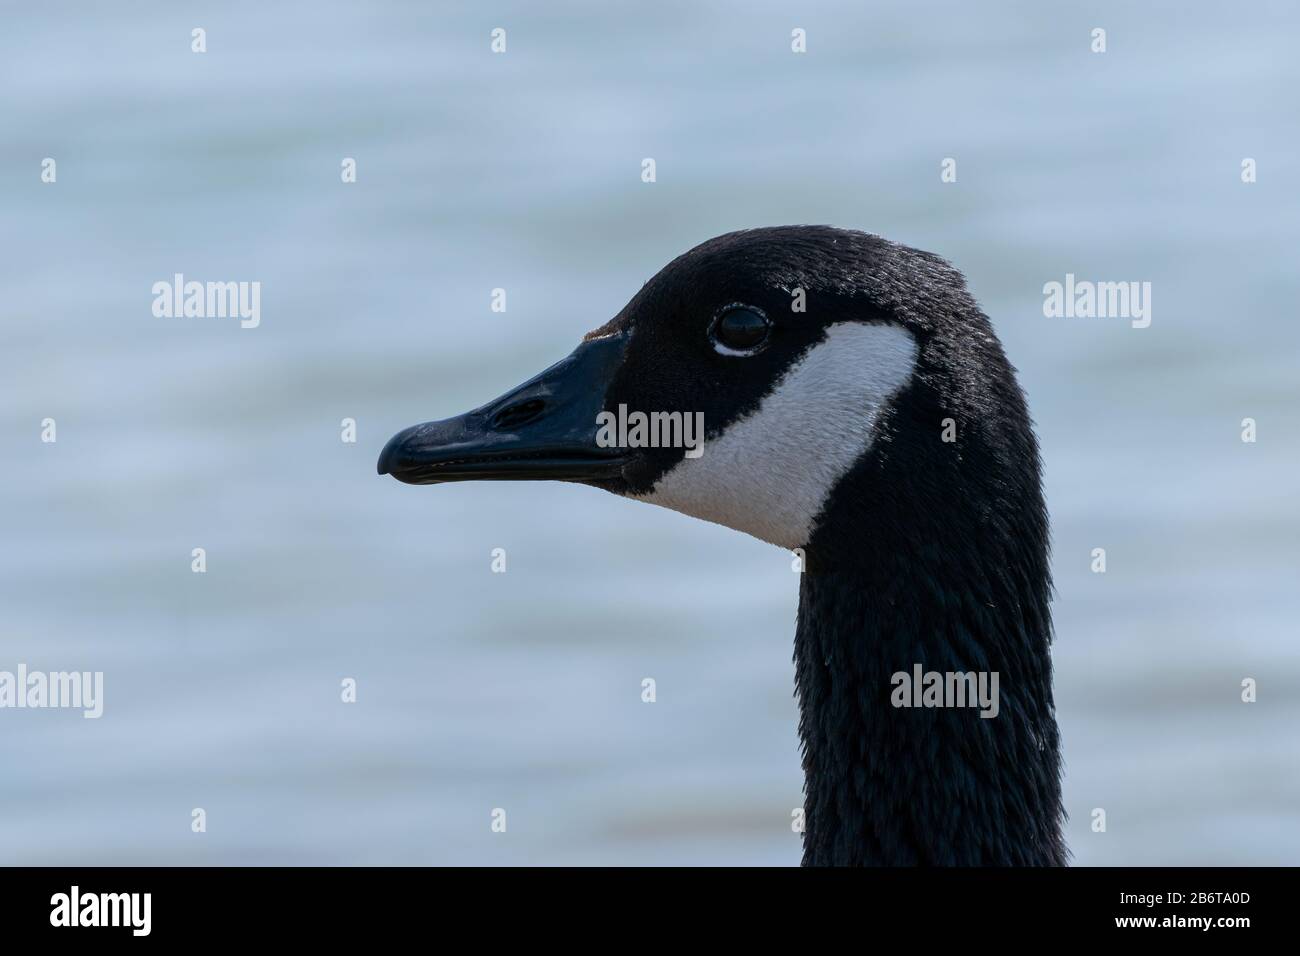 Das hochaufgeschlossene Profilporträt des Kopfes des schönen schwarzen Kopfes der Canada Goose mit seinem markanten weißen Kinnstreifen, der an einem Körper von Wasser steht. Stockfoto